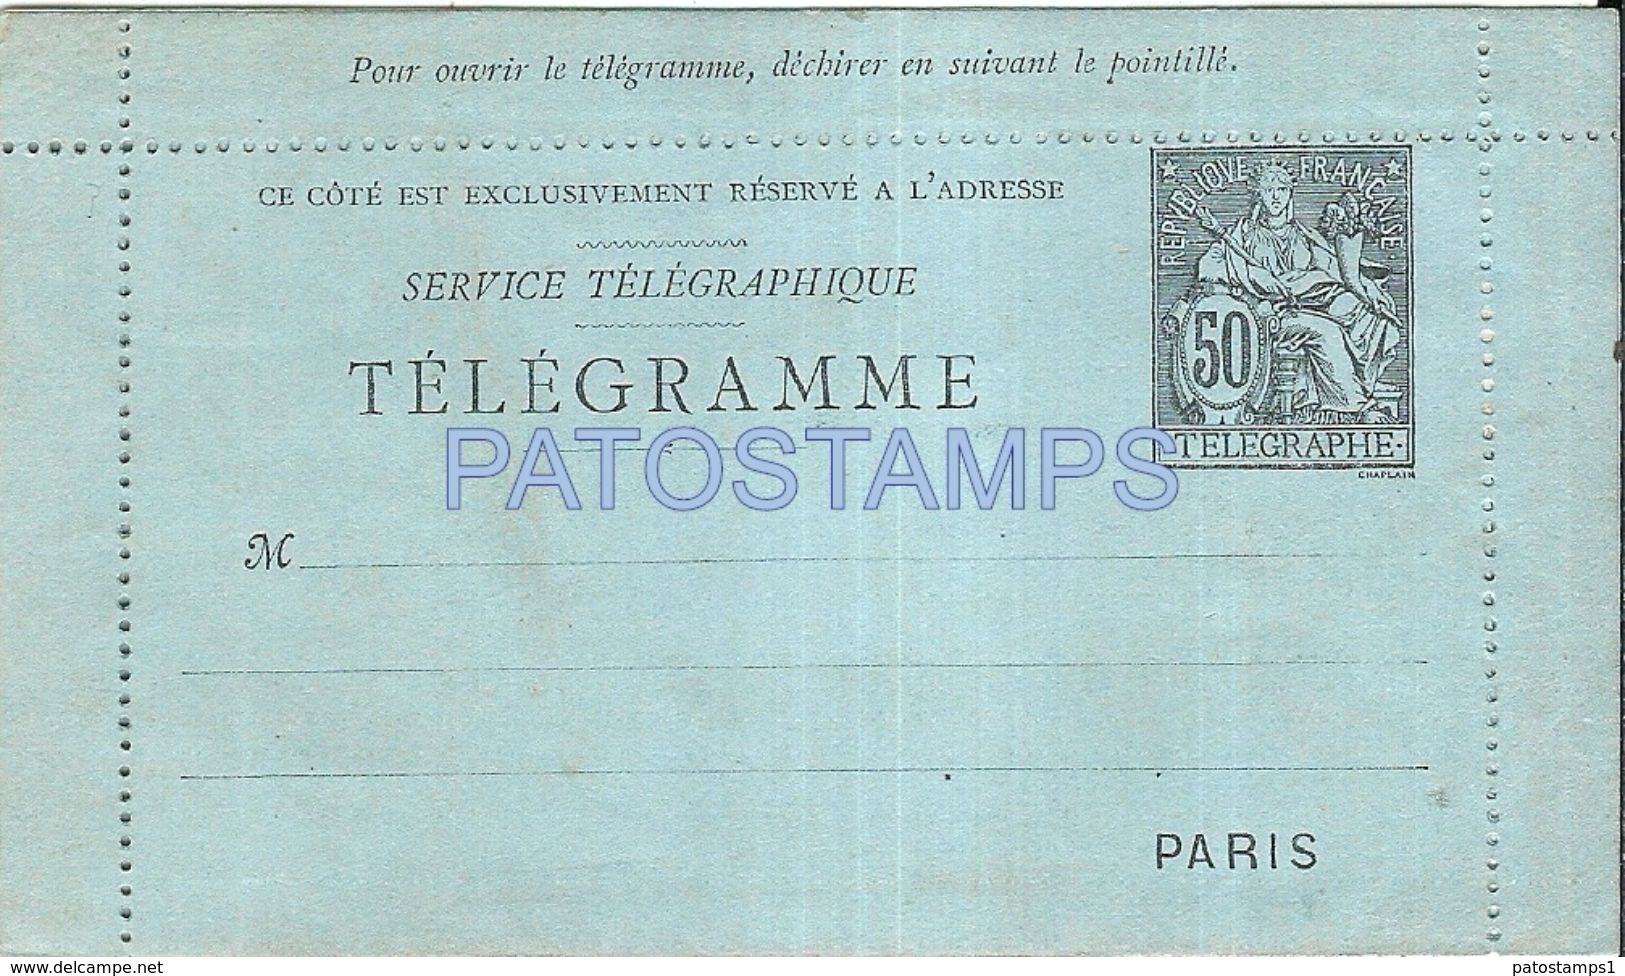 85486 FRANCIA PARIS TELEGRAM POSTAL STATIONARY POSTCARD - Neumáticos